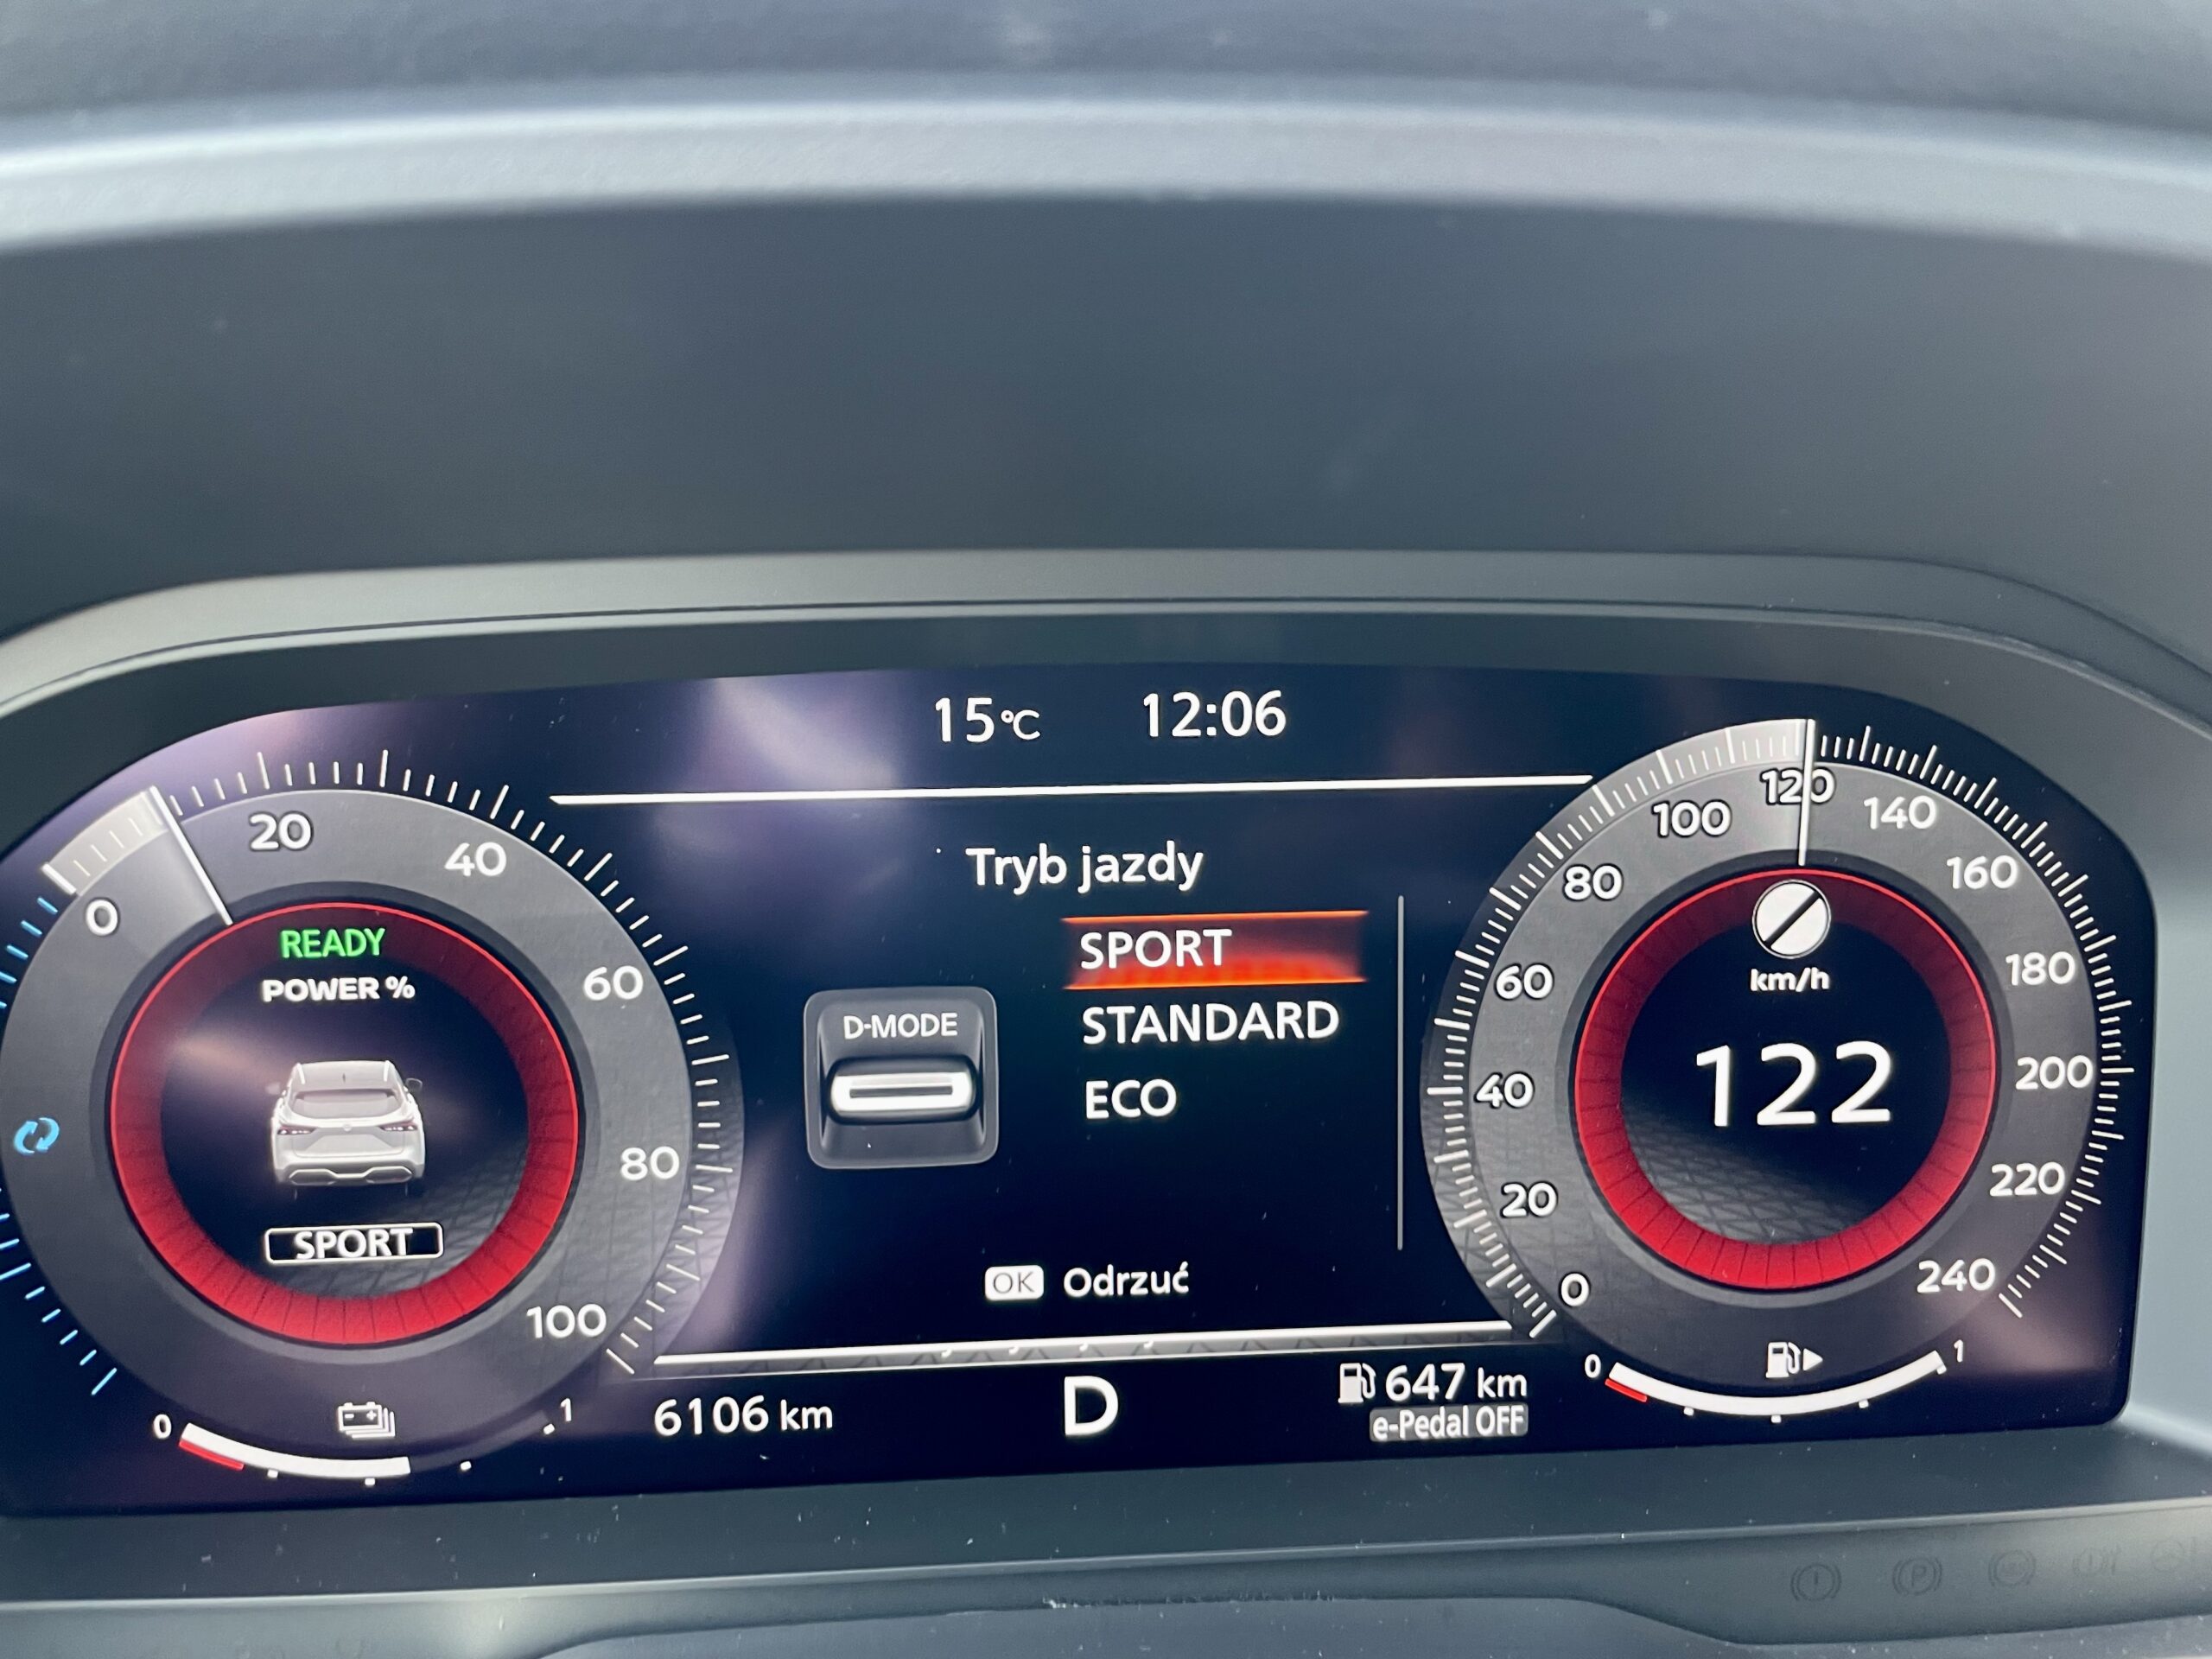 Elektroniczna tablica wskaźników Nissana w przejrzysty sposób pokazuje parametry jazdy